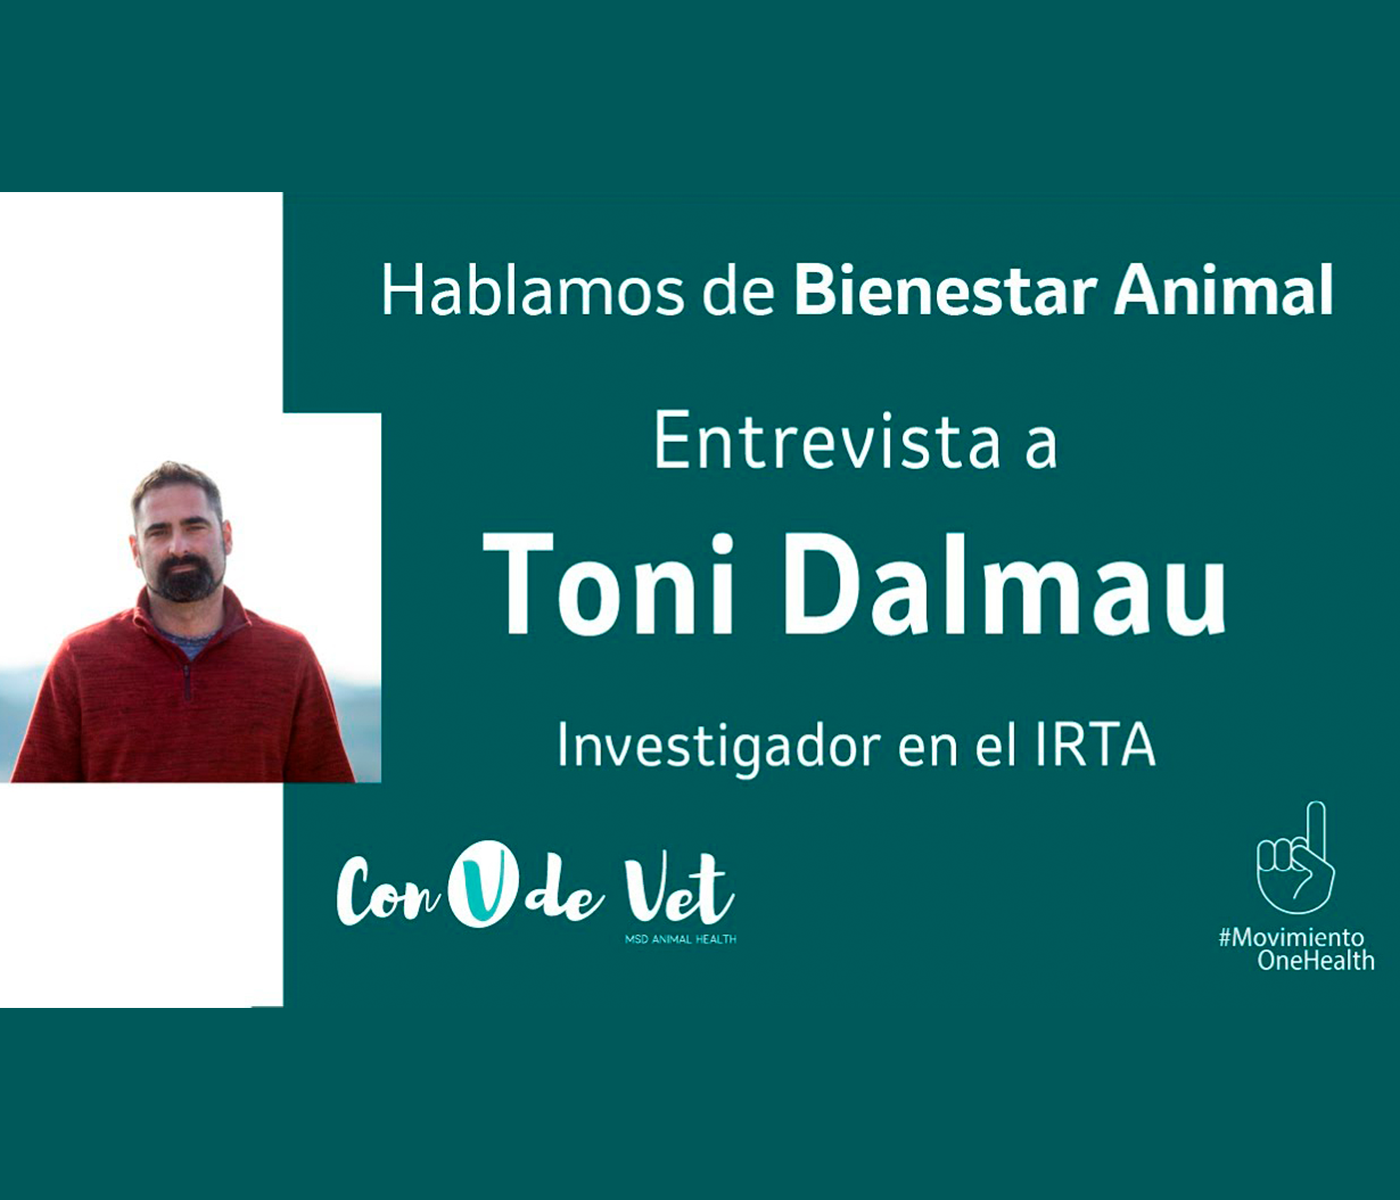 El investigador Toni Dalmau destaca la función primordial del veterinario en el bienestar animal